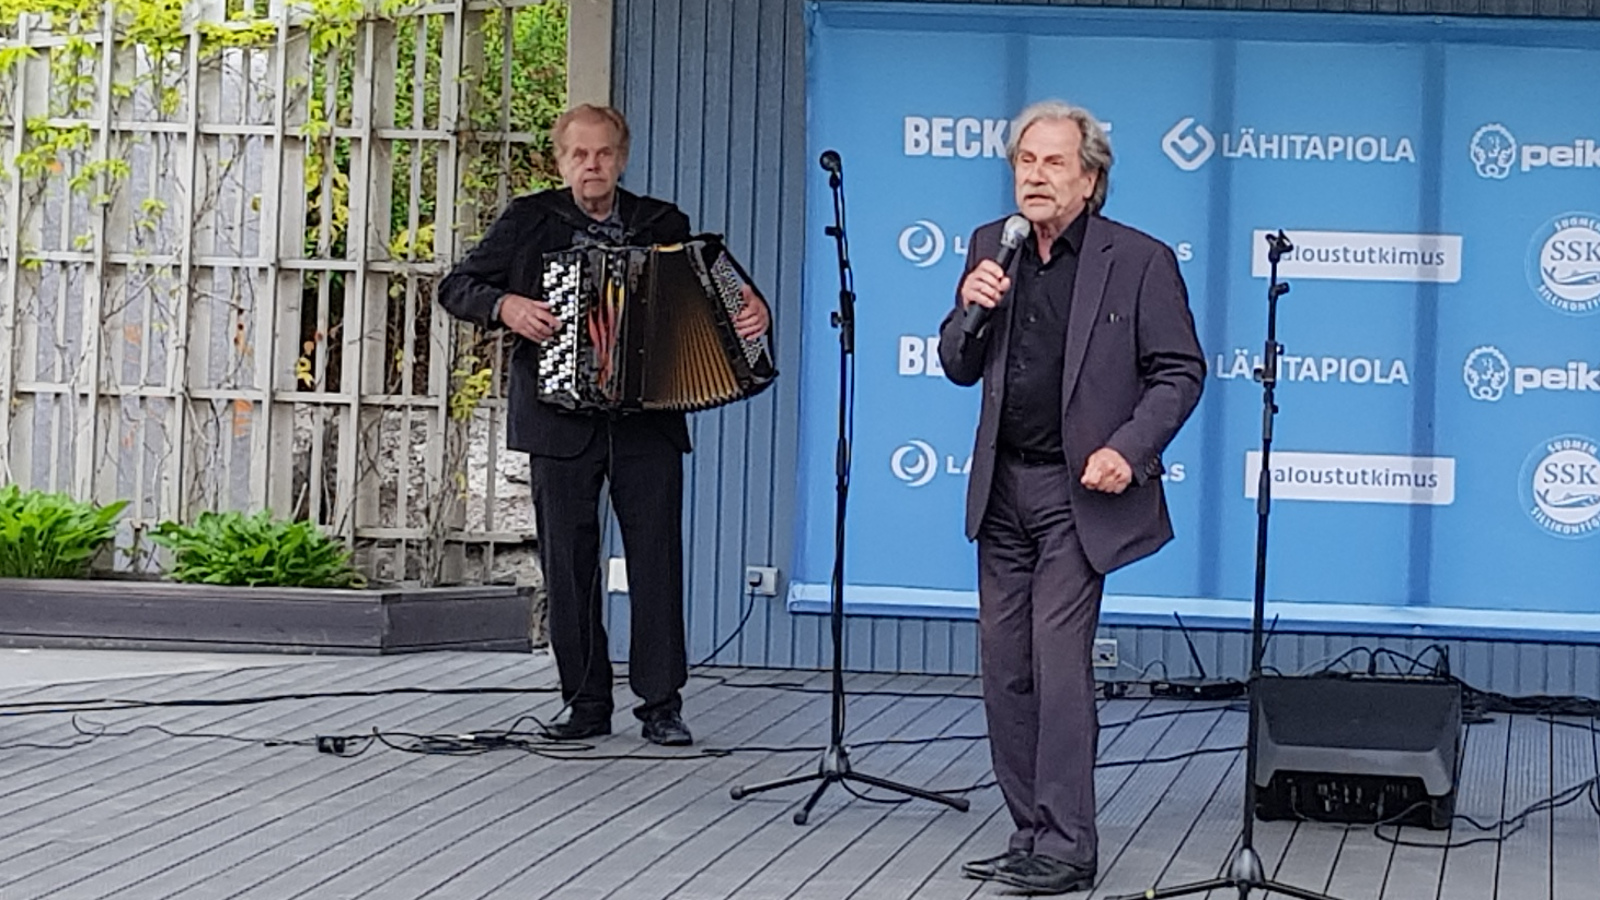 Kuvassa on Salmelan Puistonäyttämöllä vasemmalla hanuria soittamassa Heimo Mäntynen tumman harmaassa puvussa ja oikealla Erkki Liikanen myös tumman harmaassa puvussa.